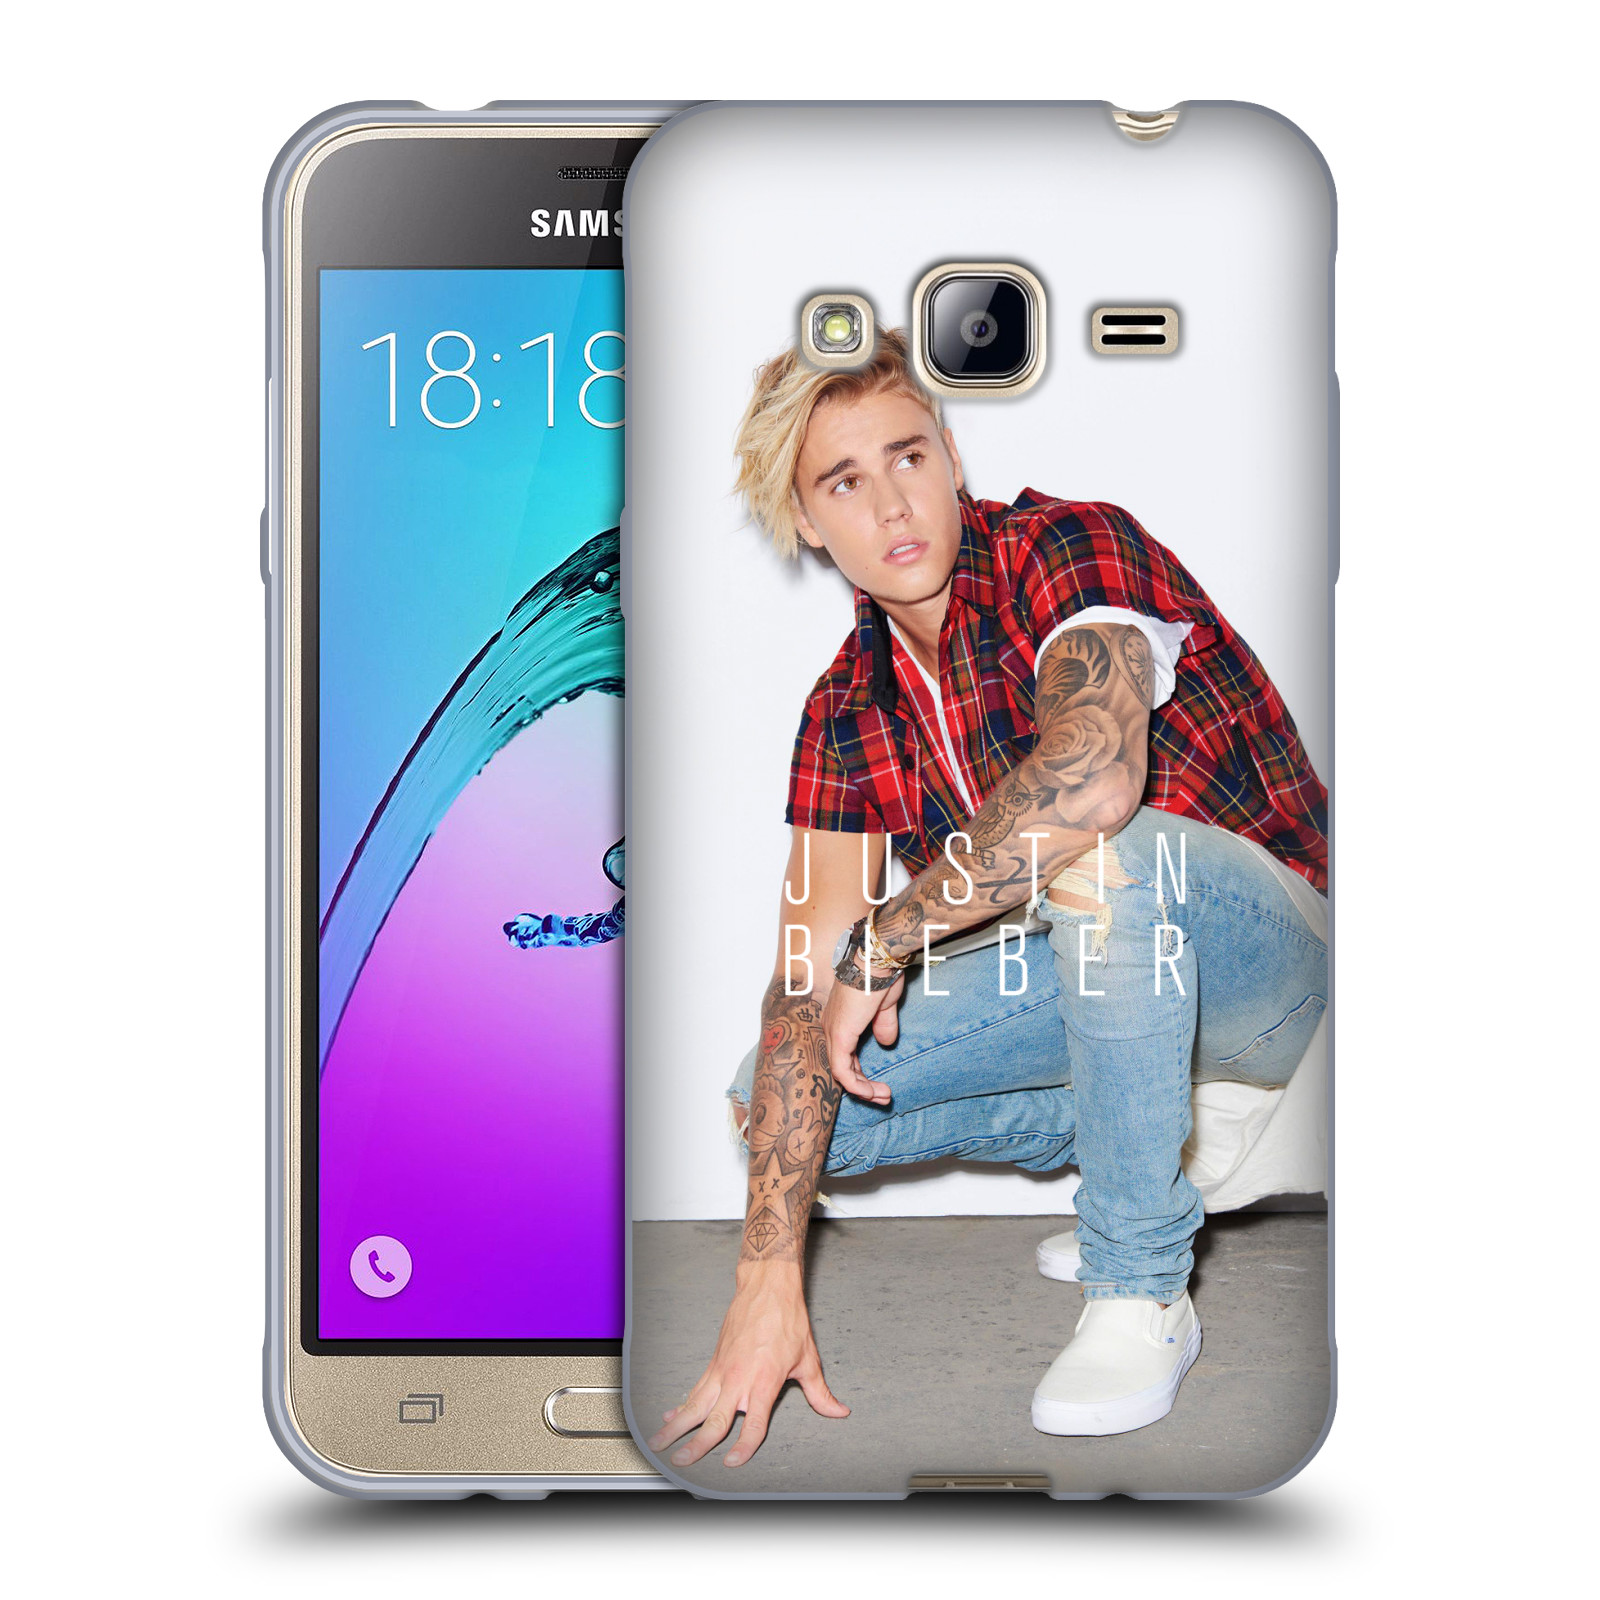 HEAD CASE silikonový obal na mobil Samsung Galaxy J3, J3 2016 Justin Bieber foto Purpose tour kalendář